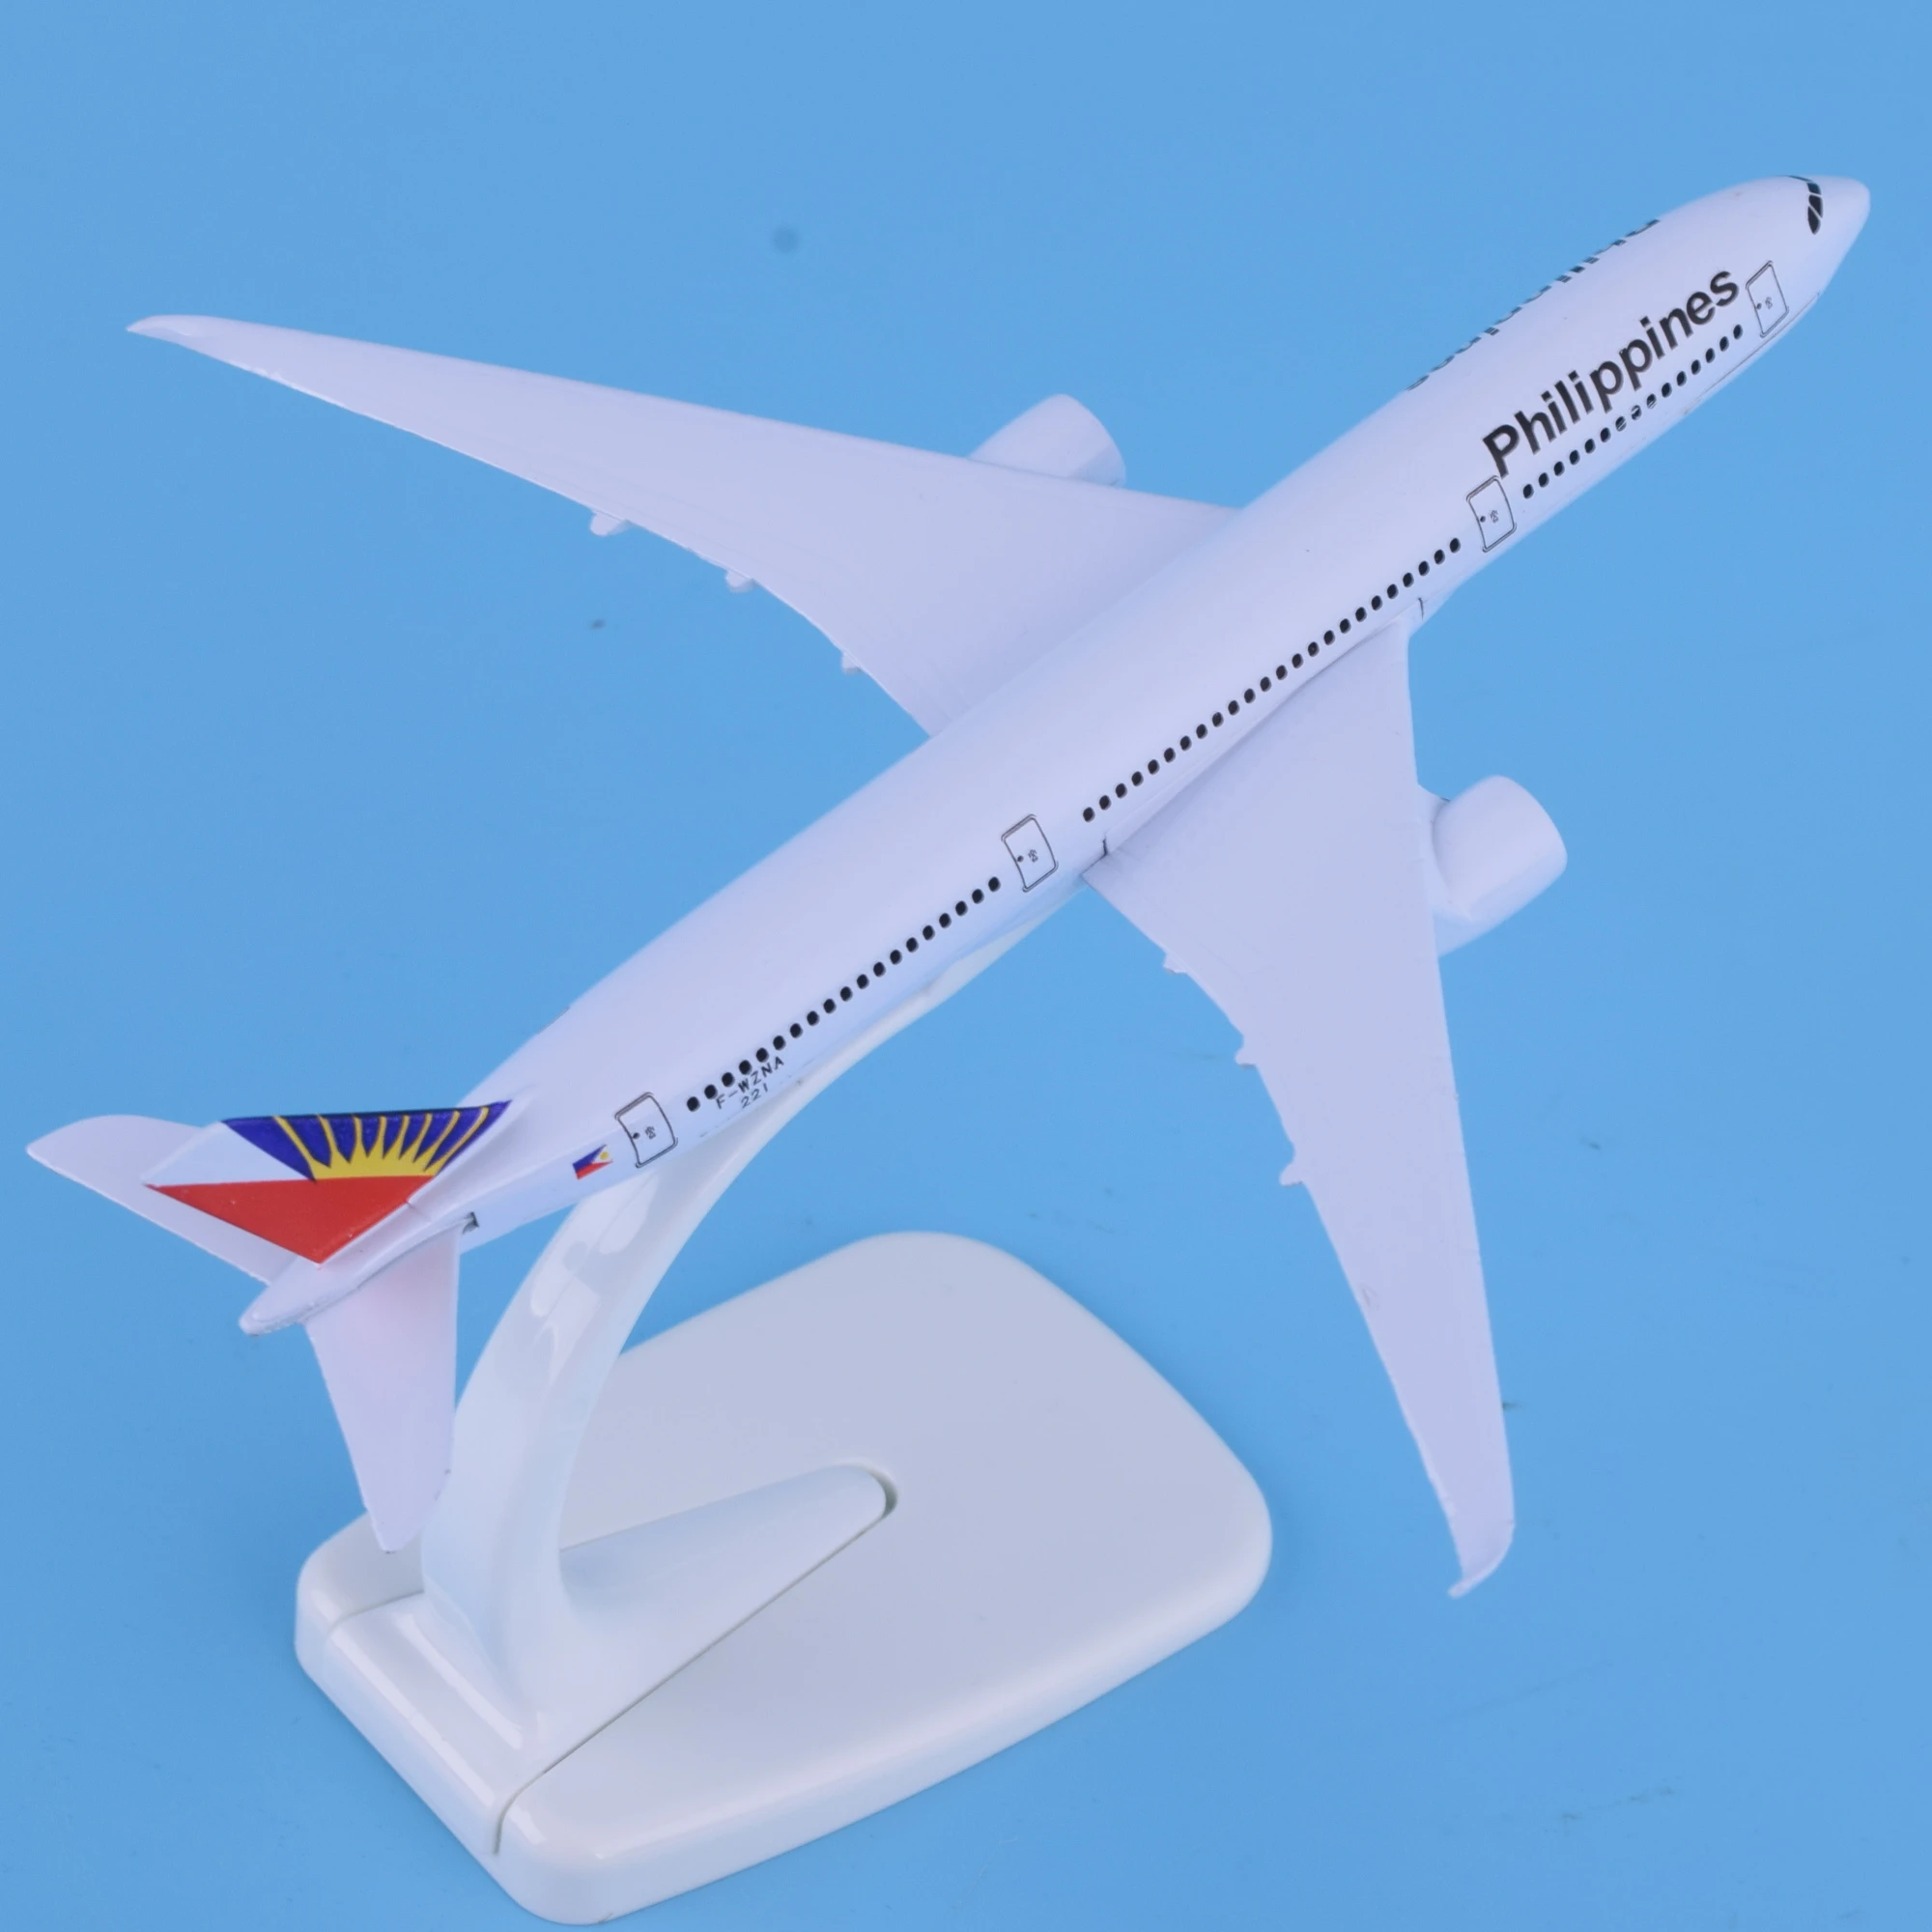 المعادن طائرة نموذجية الترويجية الأعمال هدية الحرف اليدوية 1/400 16 سنتيمتر مخصص شعار الفلبين الخطوط الجوية A350 نموذج طائرة سبيكة